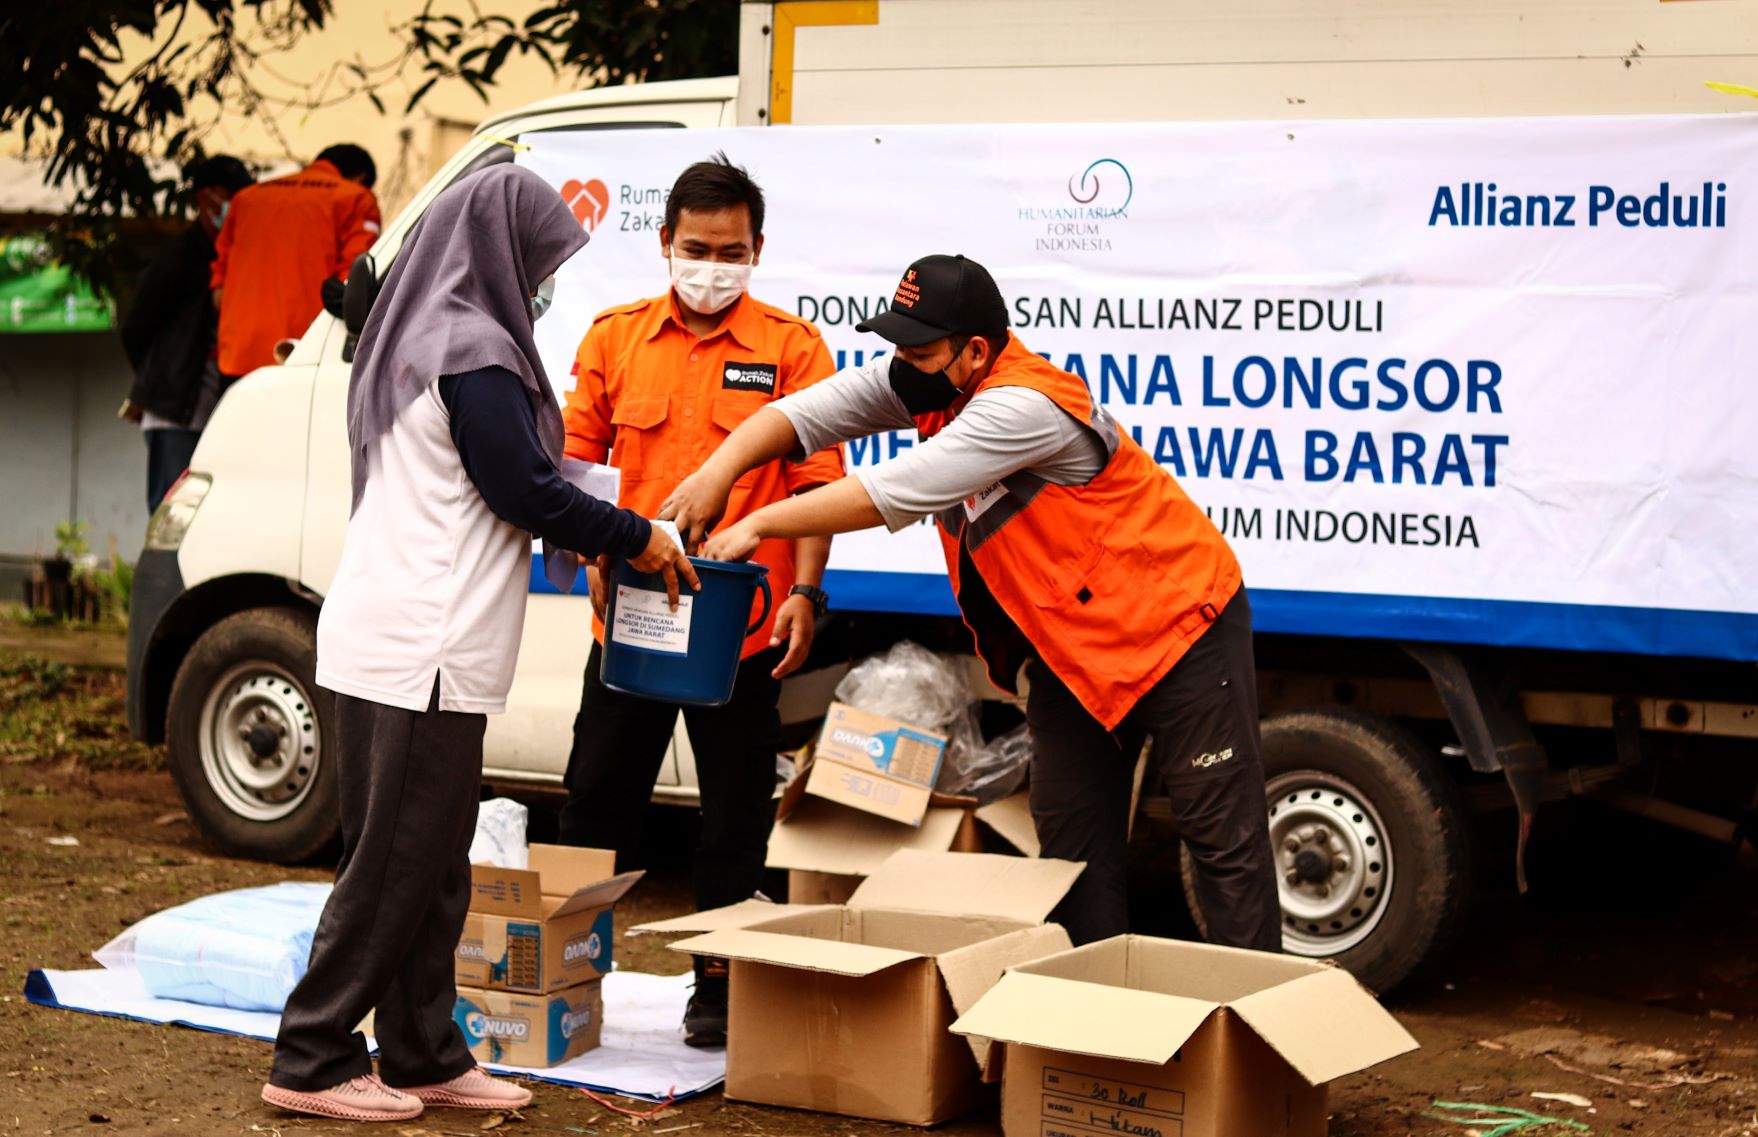 Penyaluran donasi di Sumedang, Jawa Barat dibantu oleh Rumah Zakat pada tanggal 27-28 Februari 2021